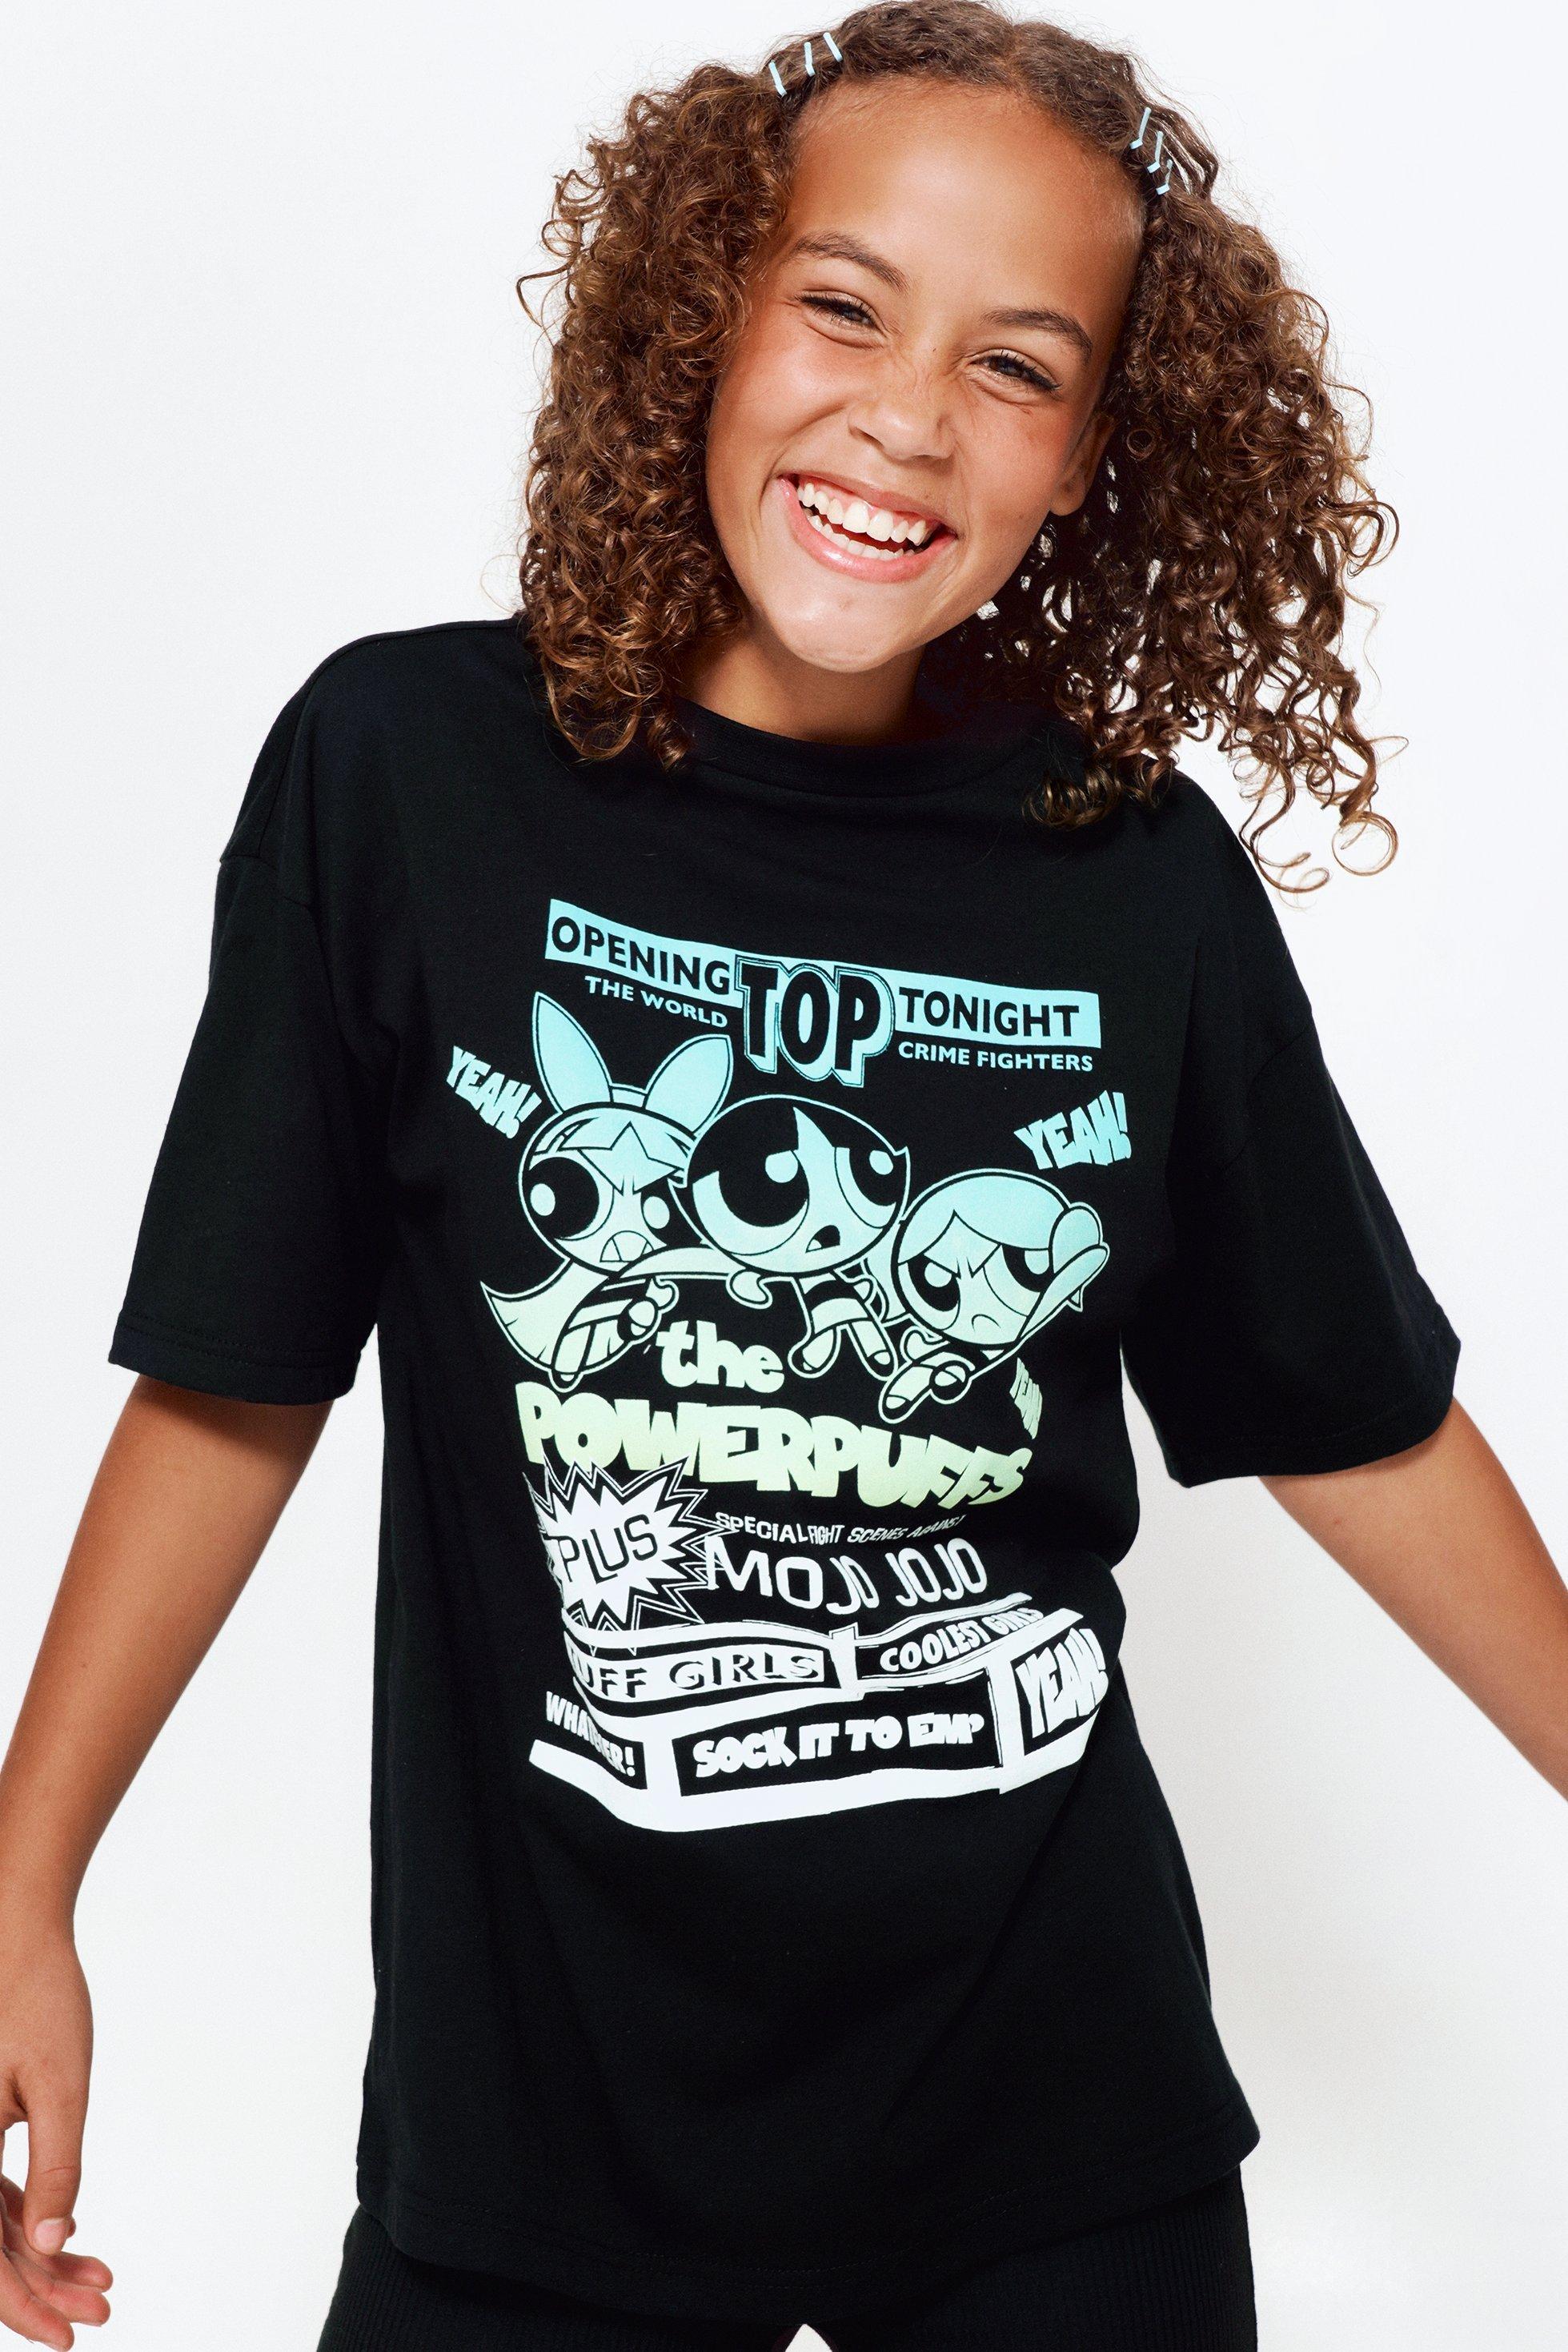 The Powerpuff Girls T-shirt